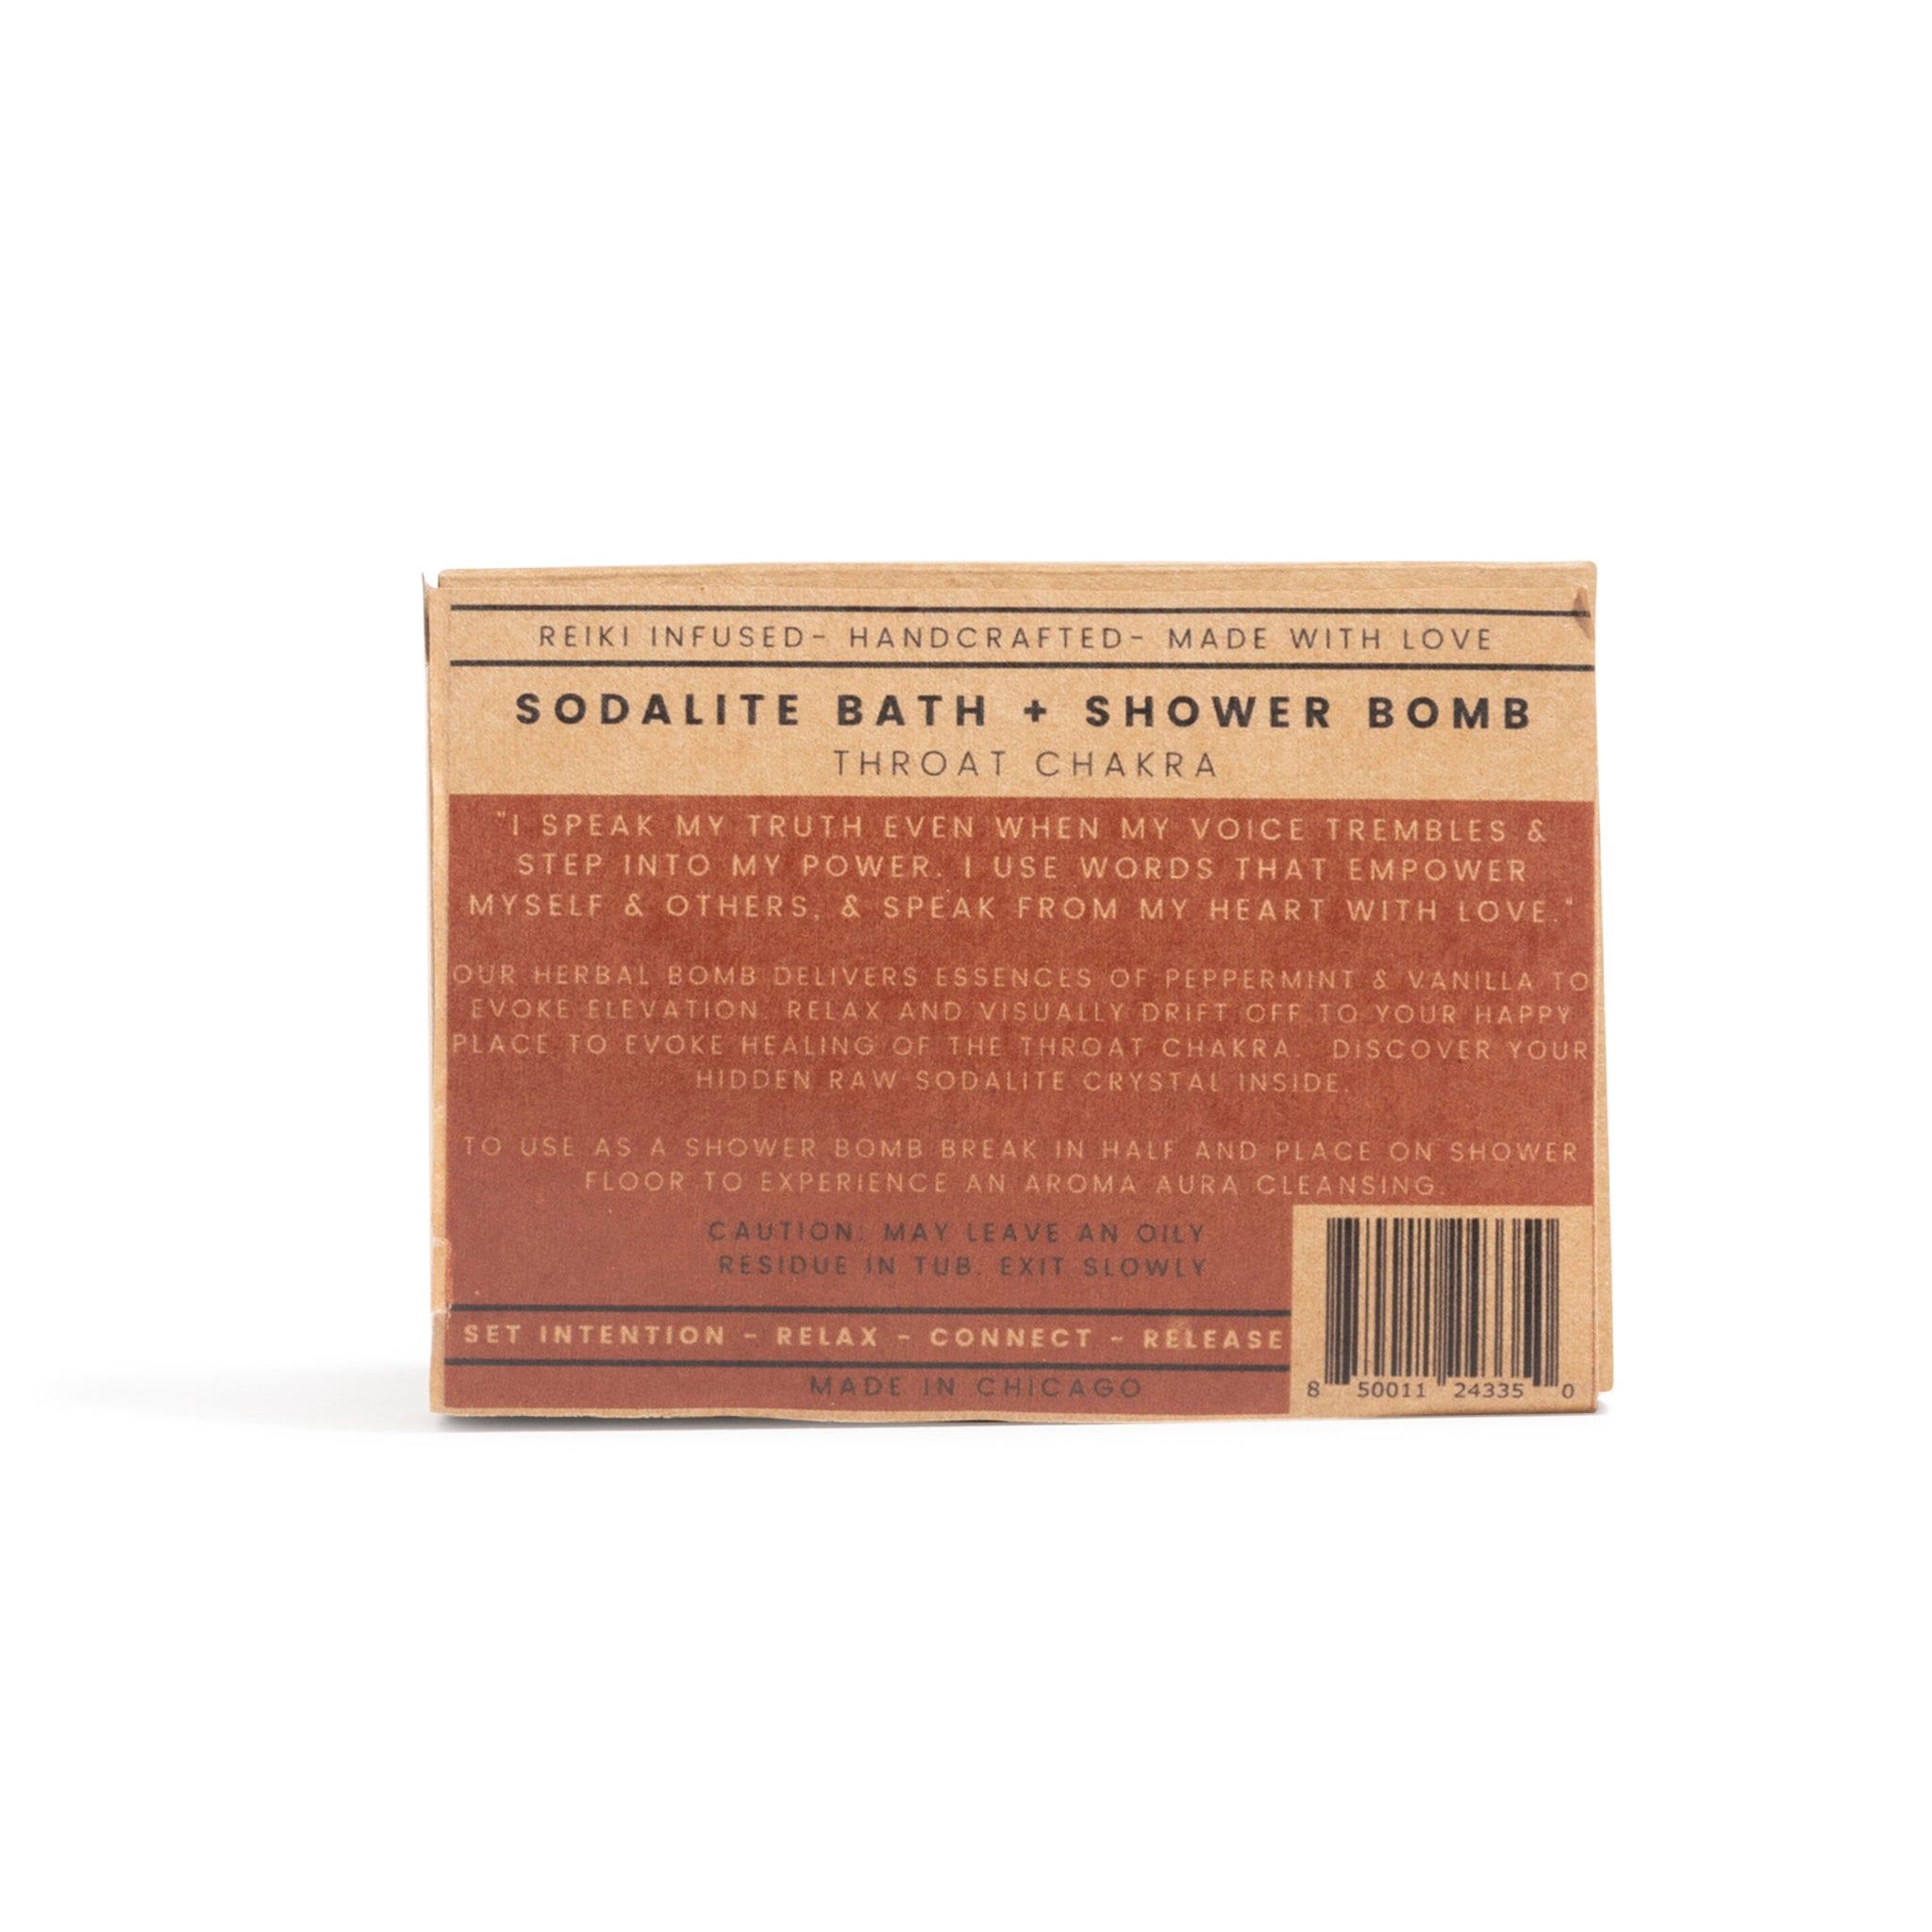 Sodalite Bath + Shower Bomb THROAT CHAKRA